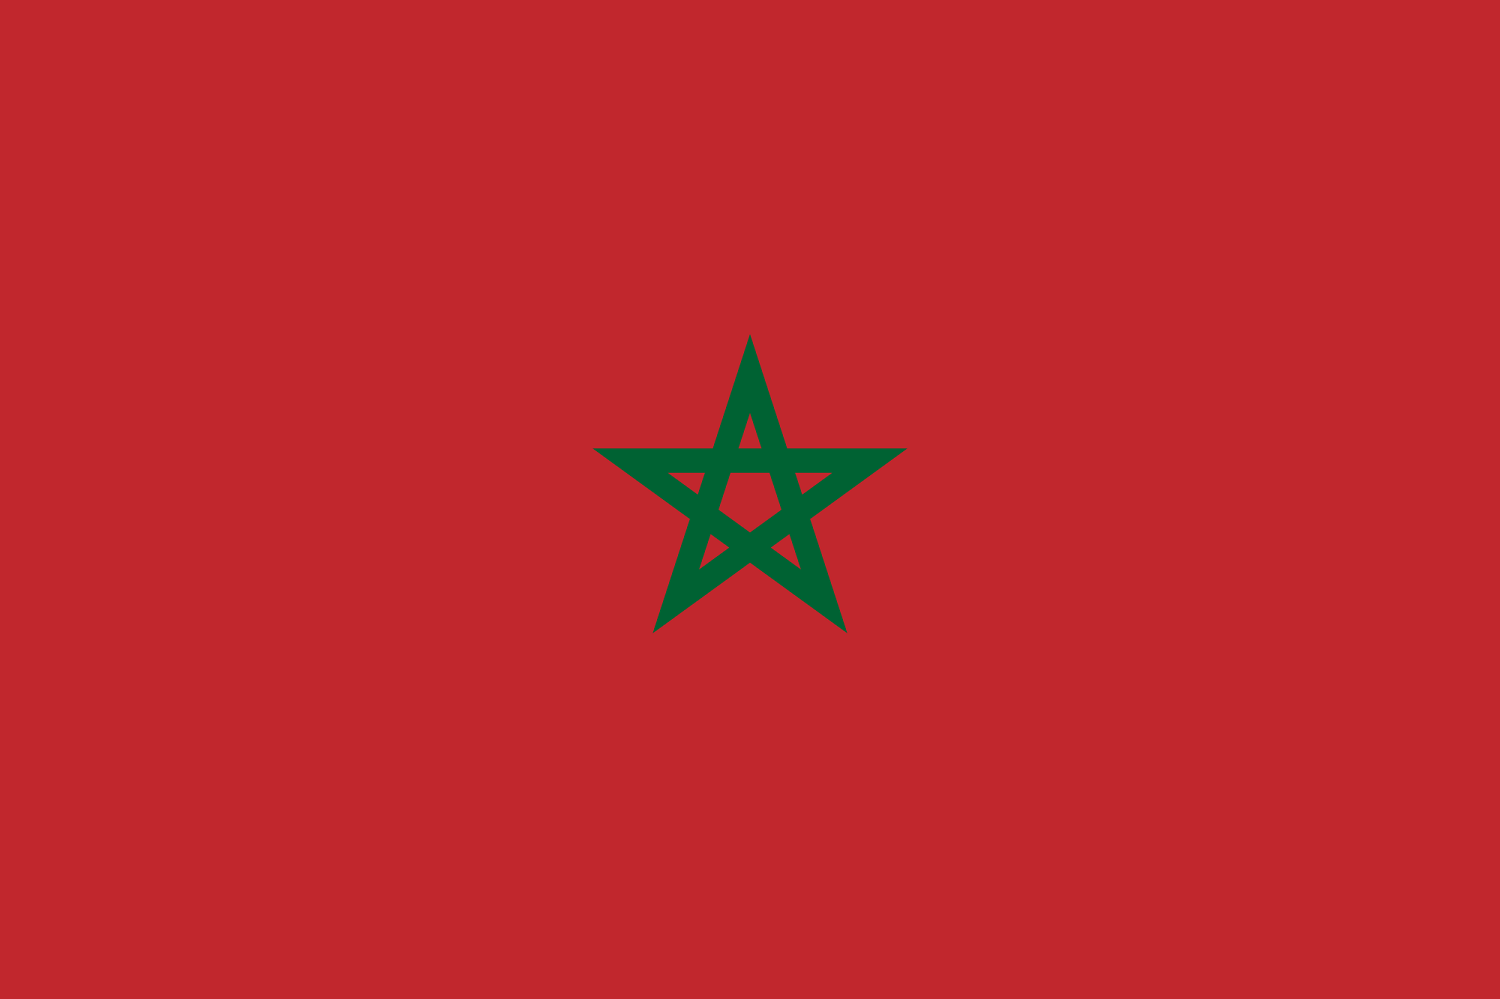 Maroko - cestovateľské rady, tipy, itinerár a rozpočet